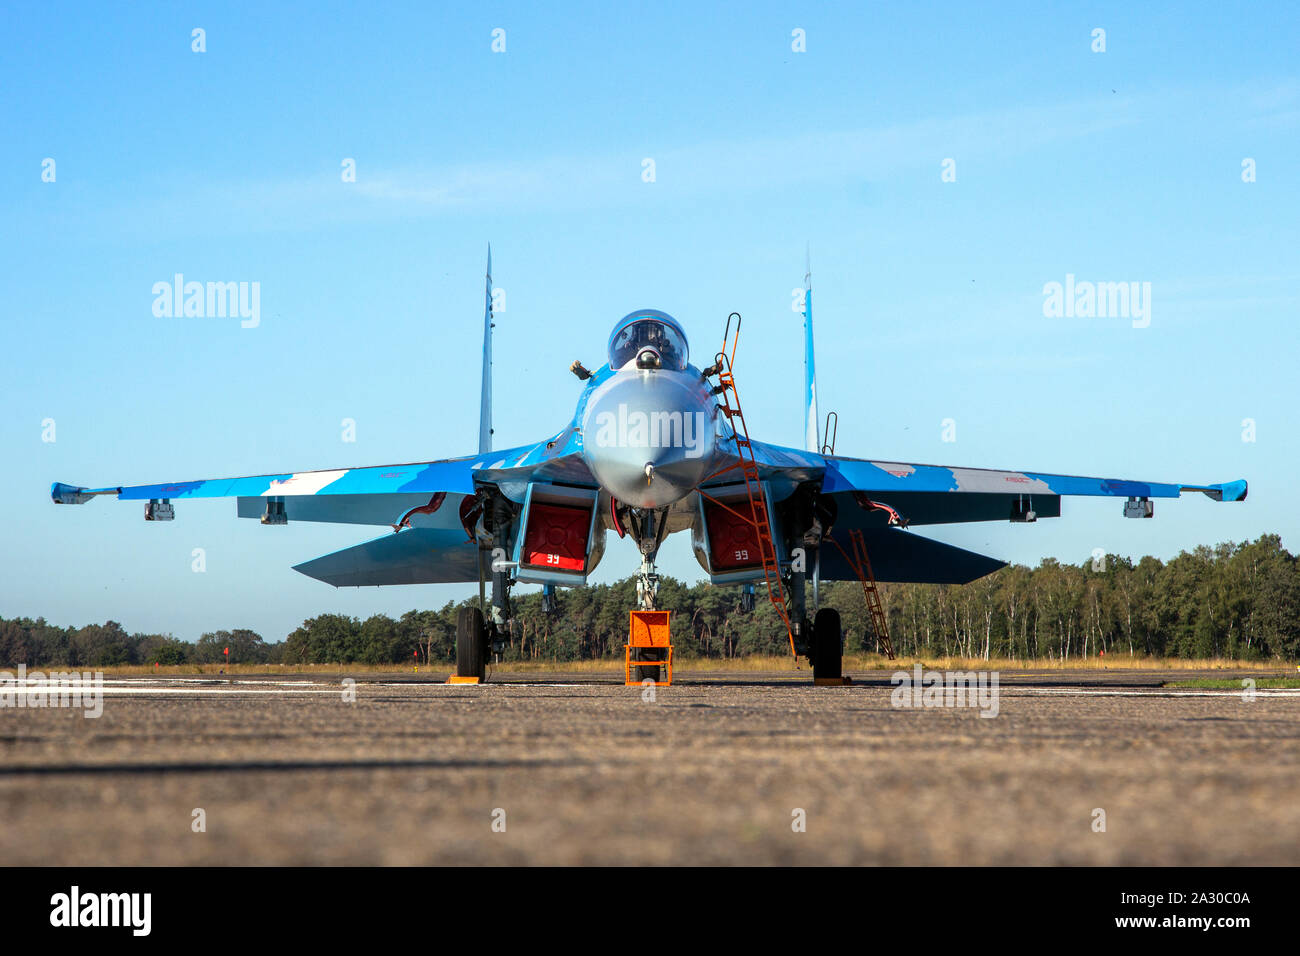 KLEINE BROGEL, BELGIQUE - Sep 14, 2019 : l'Armée de l'air ukrainienne Sukhoi Su-27 FLANKER fighter jet avion sur le tarmac de la base aérienne d'Oostende. Banque D'Images